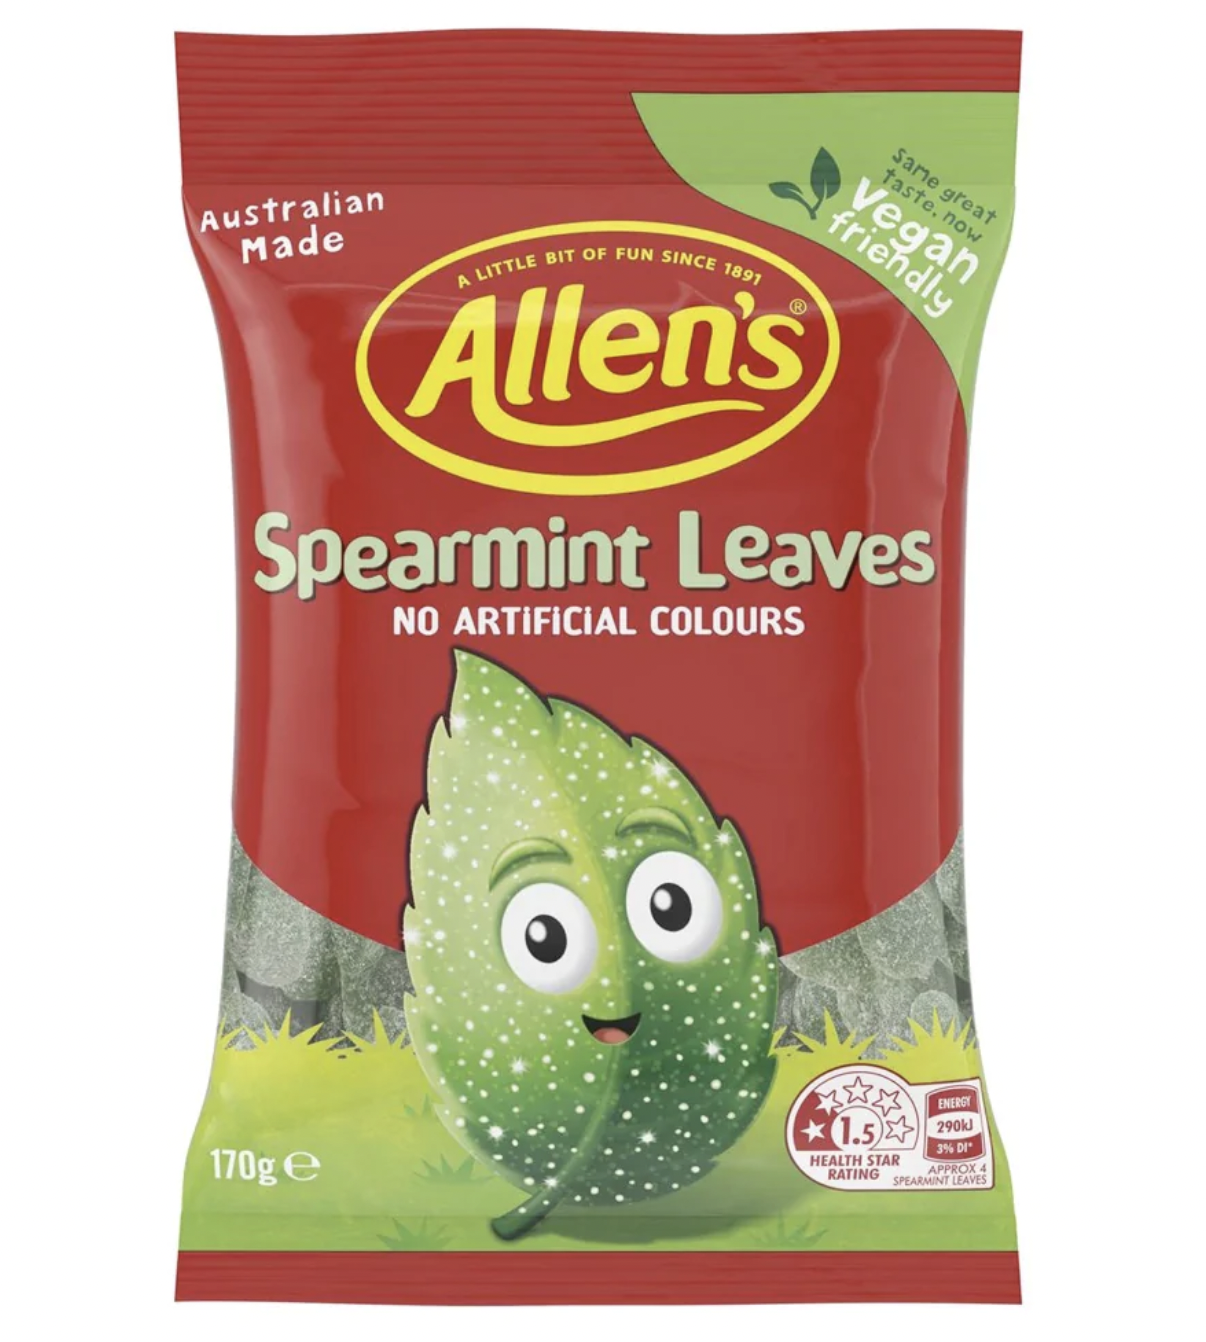 A bag of Allen's Spearmint lollies